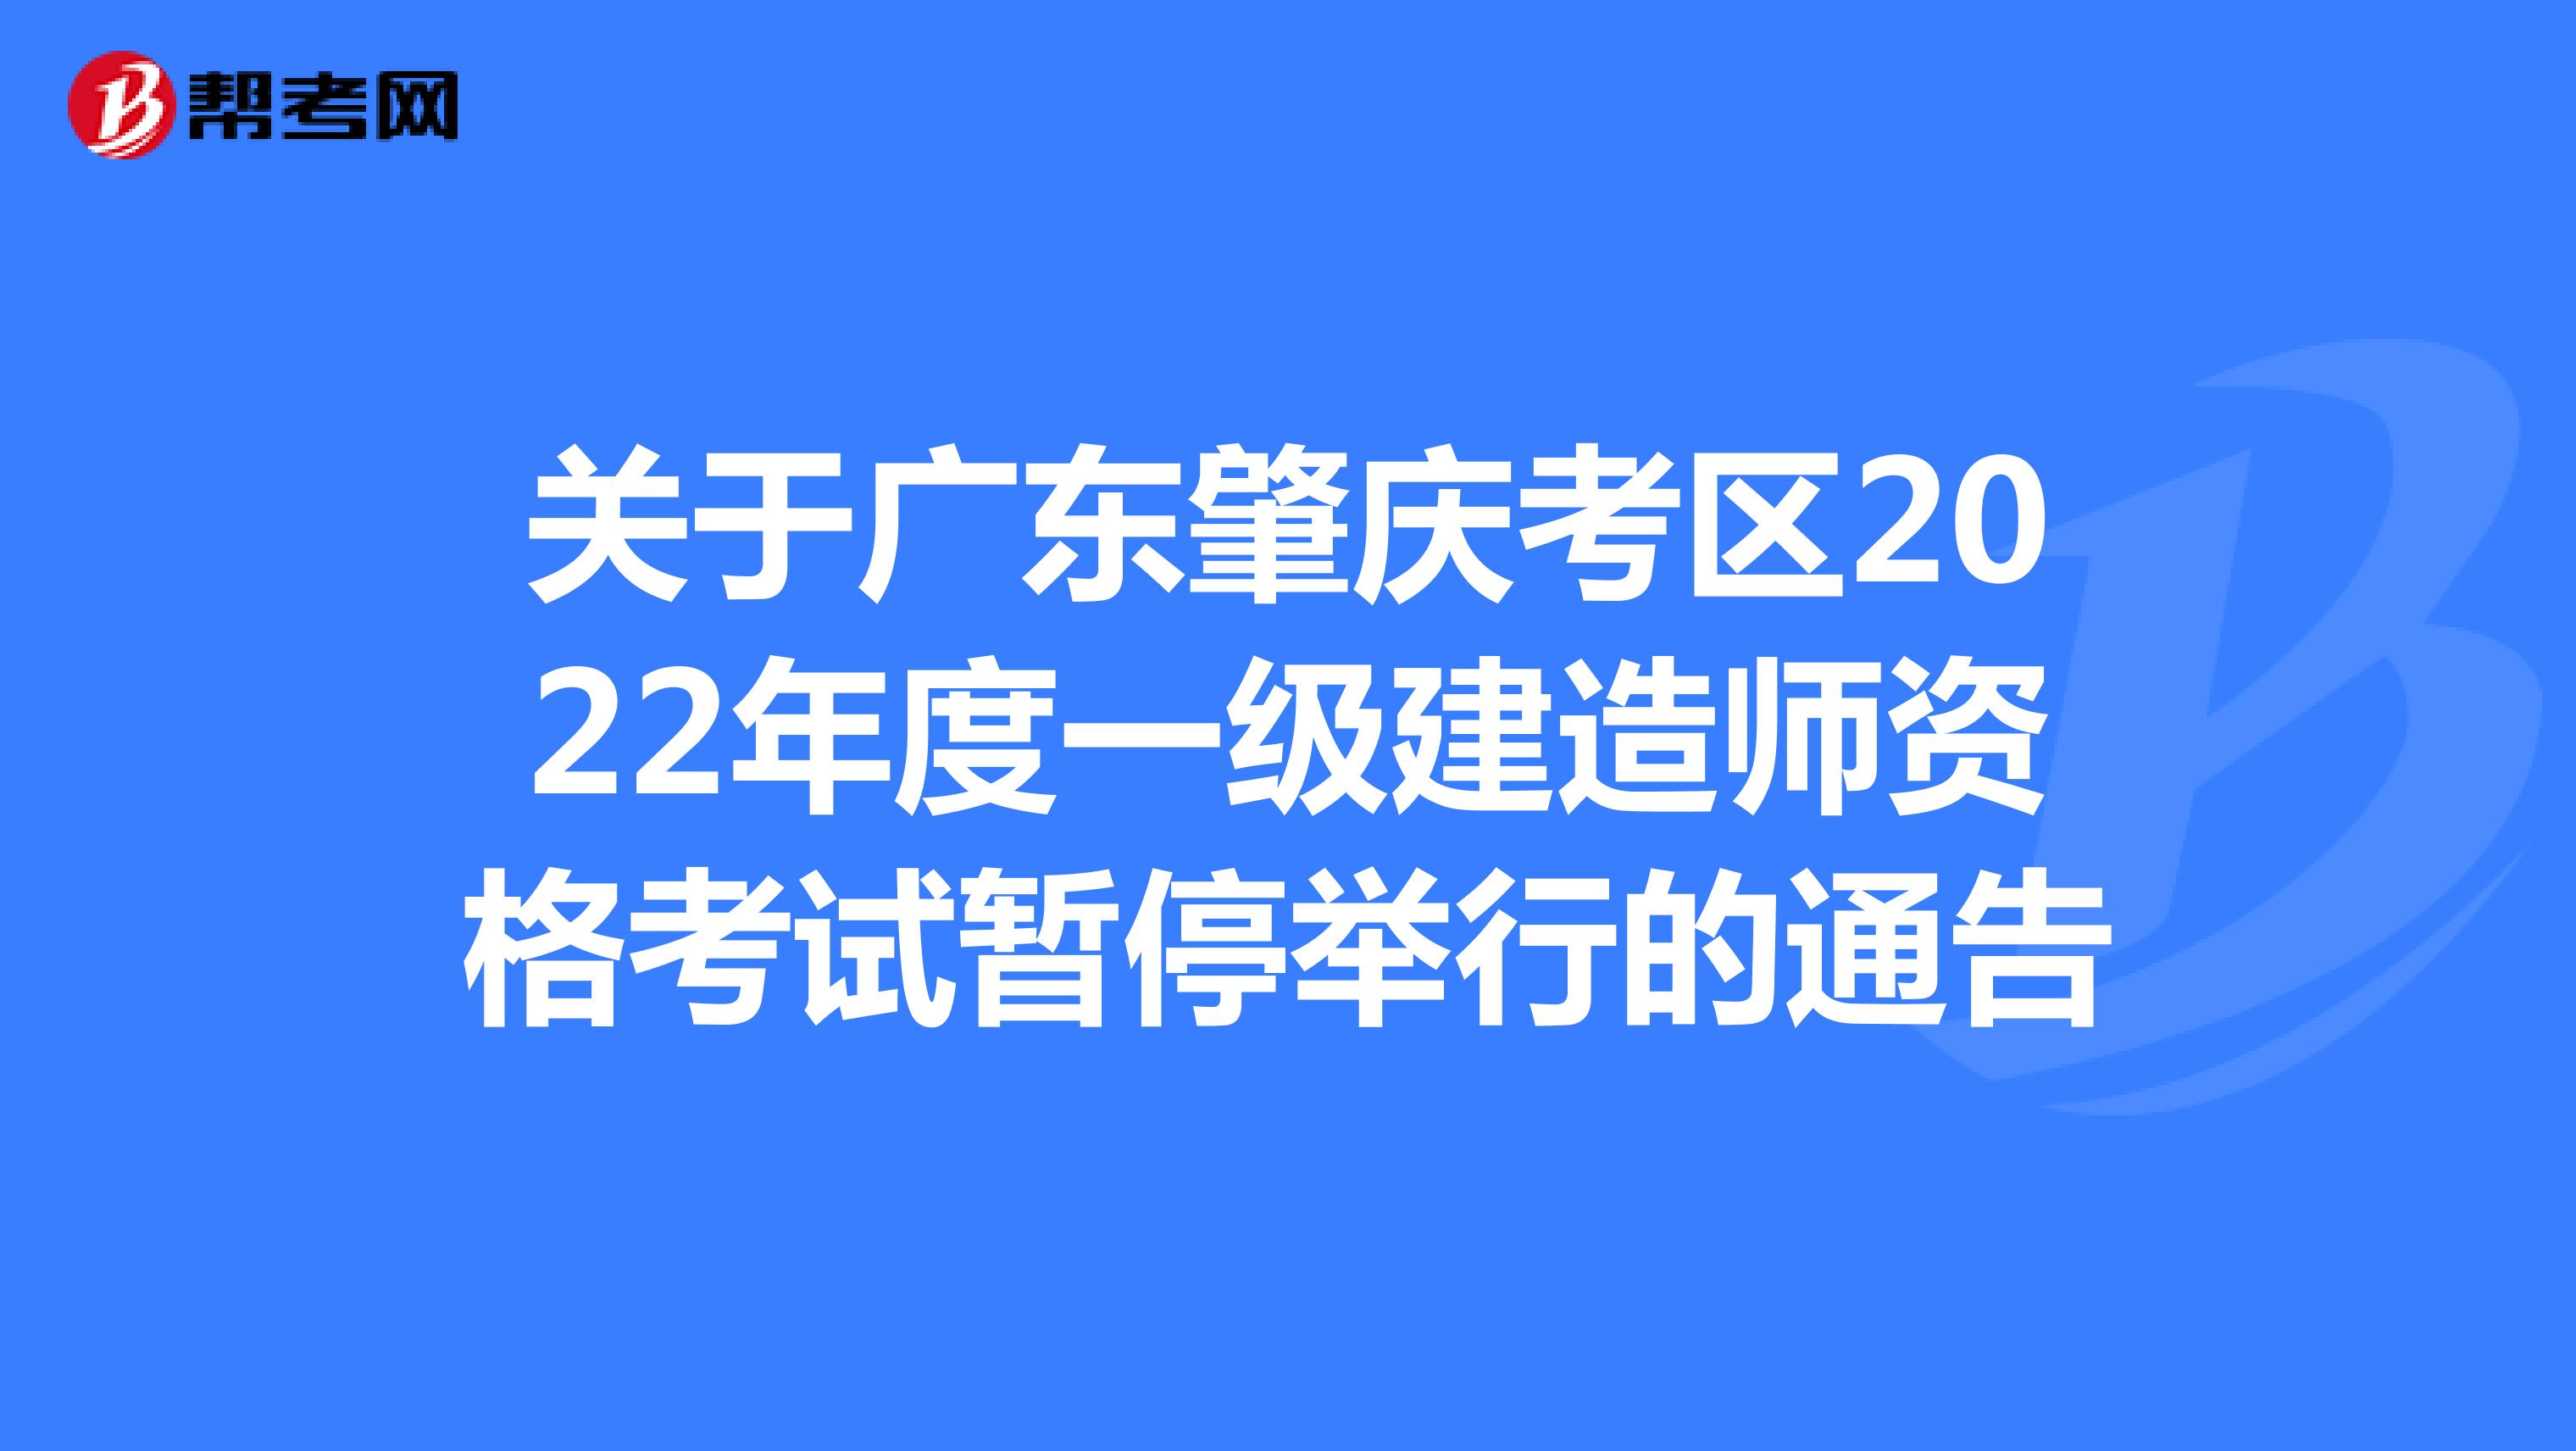 关于广东肇庆考区2022年度一级建造师资格考试暂停举行的通告